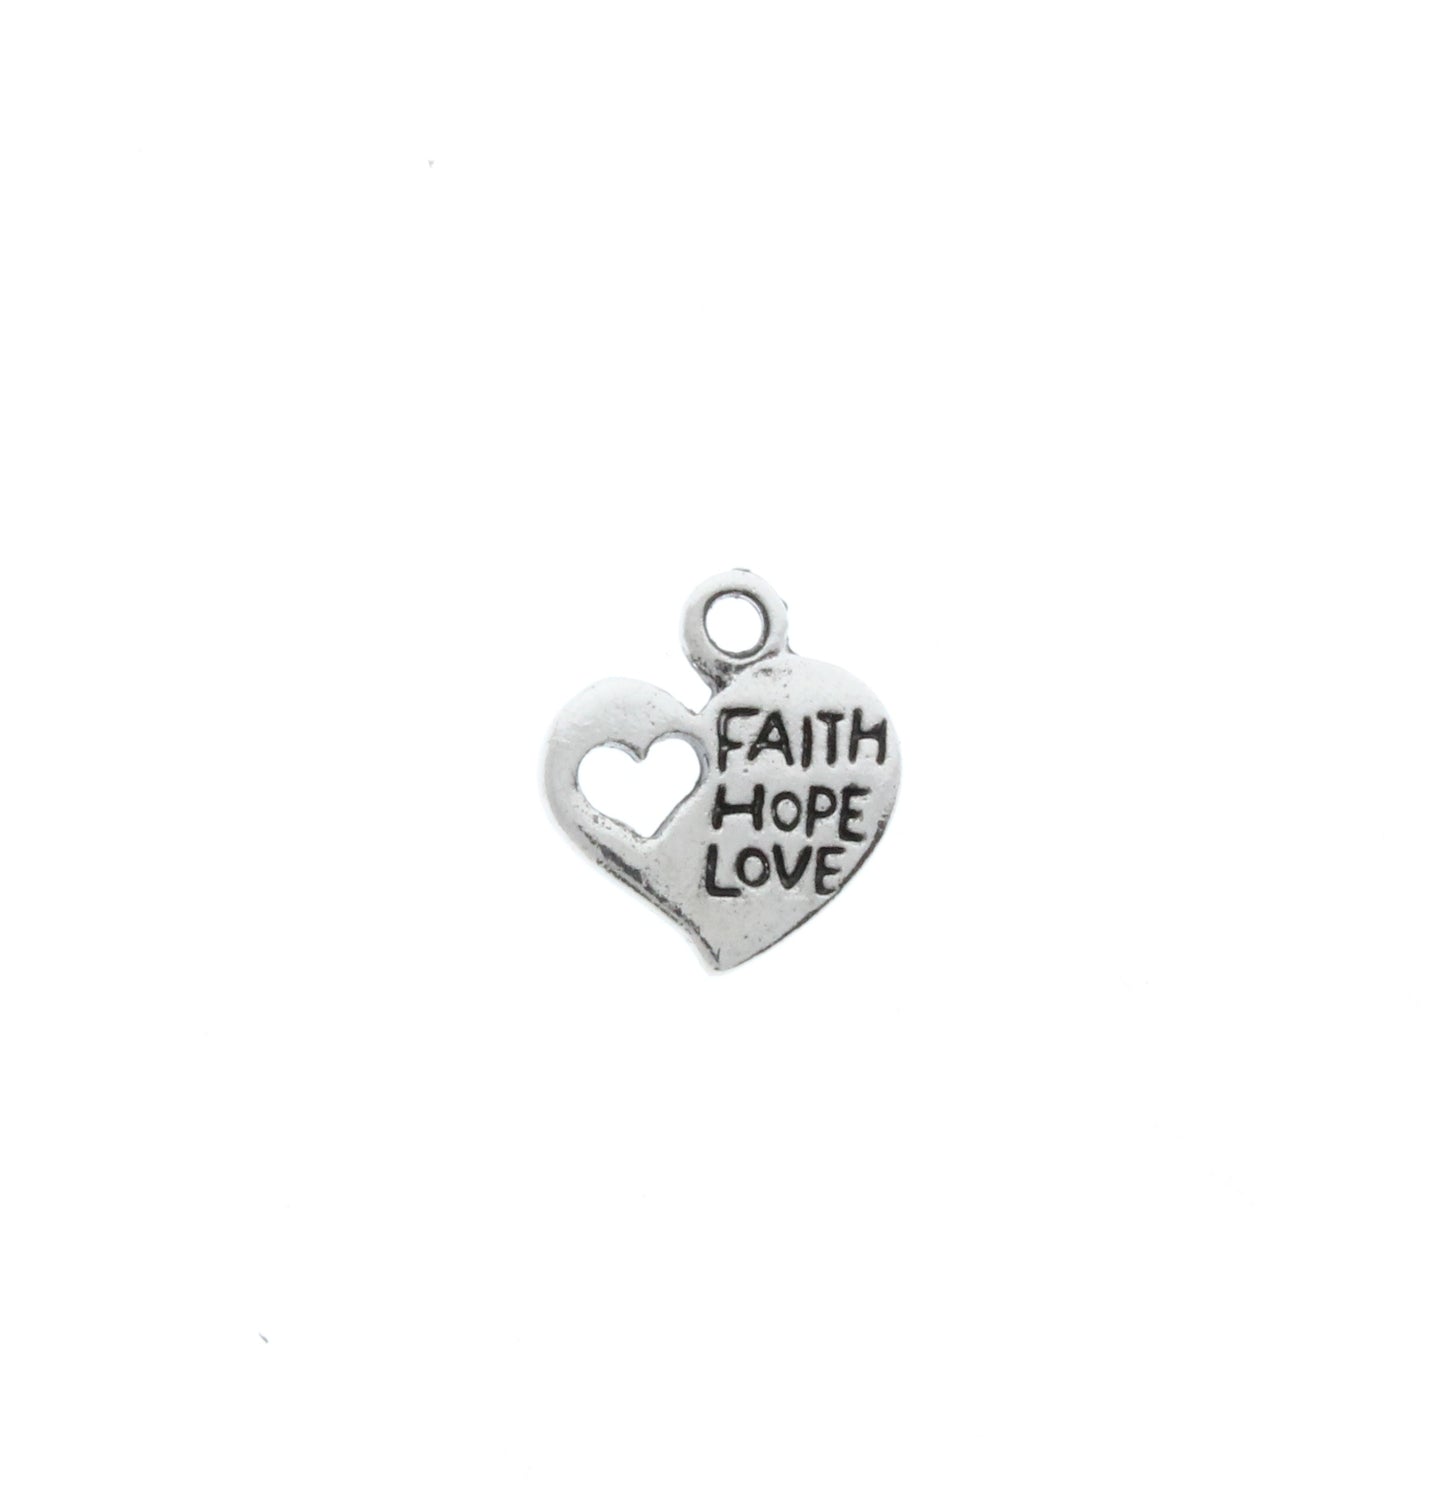 Heart "Faith, Hope, Love" Charm, heart within a heart, sold 6 each